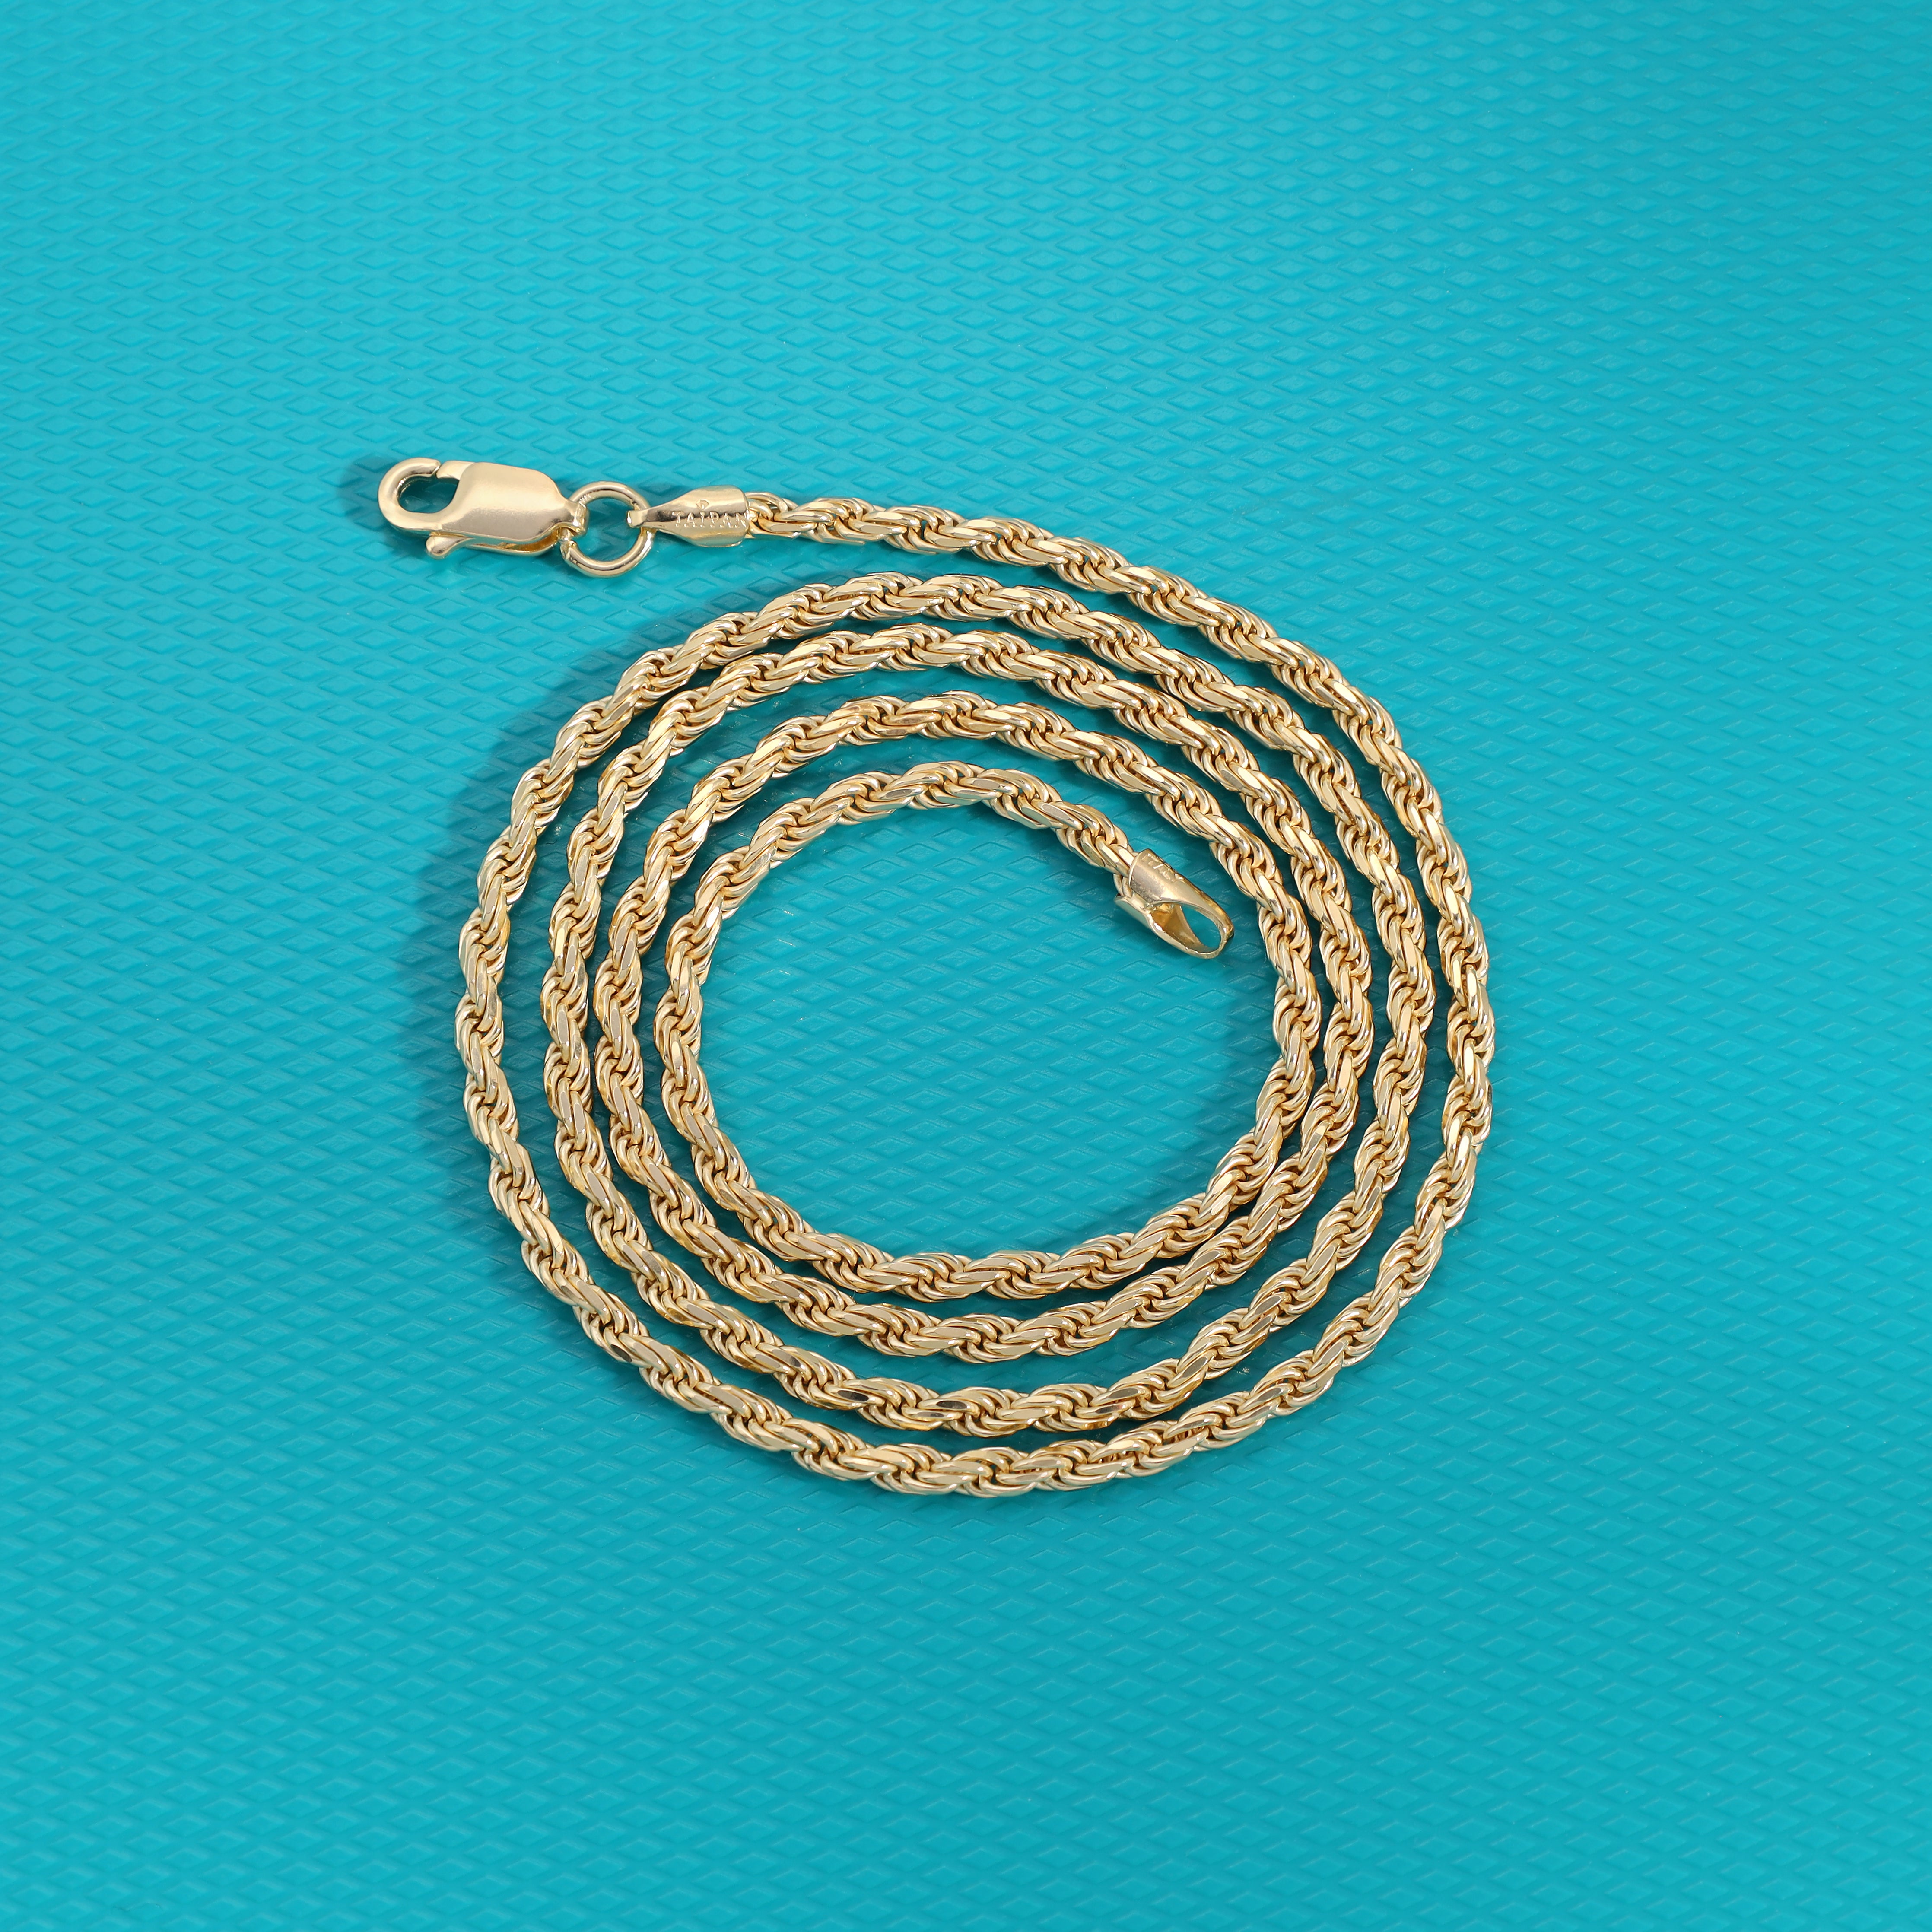 Vergoldete Kordelkette Rope Chain 2,3mm 50cm lang 925 Sterling Silber (K806) - Taipan Schmuck